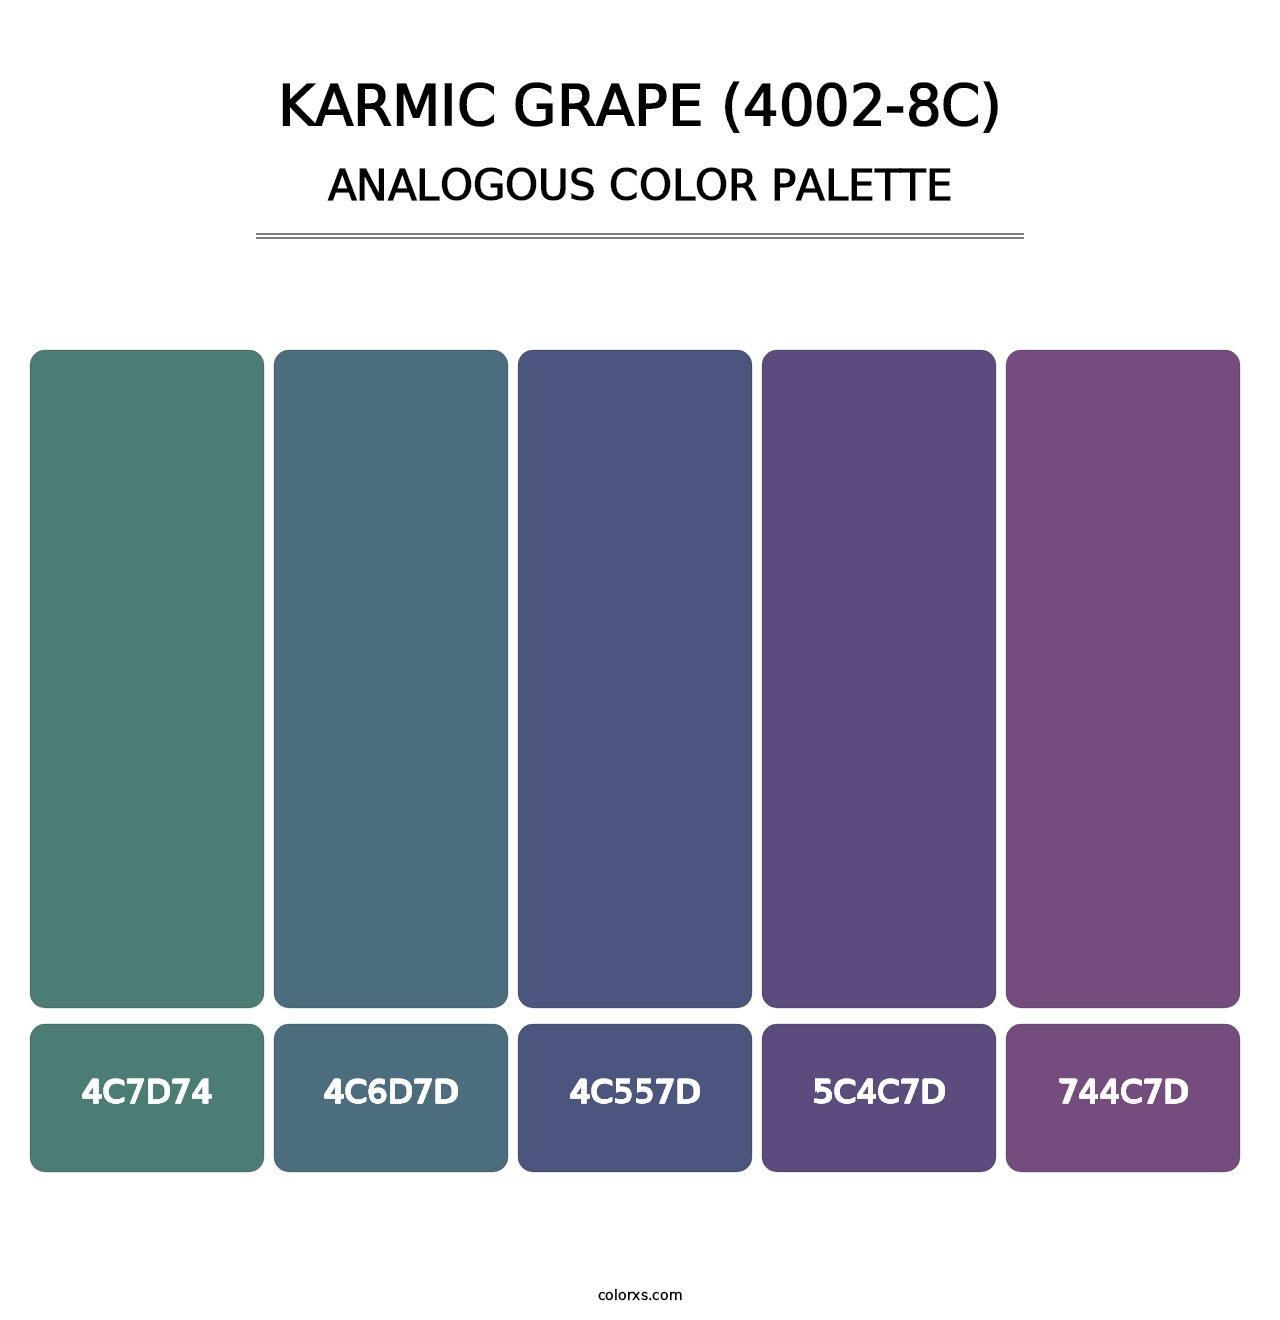 Karmic Grape (4002-8C) - Analogous Color Palette